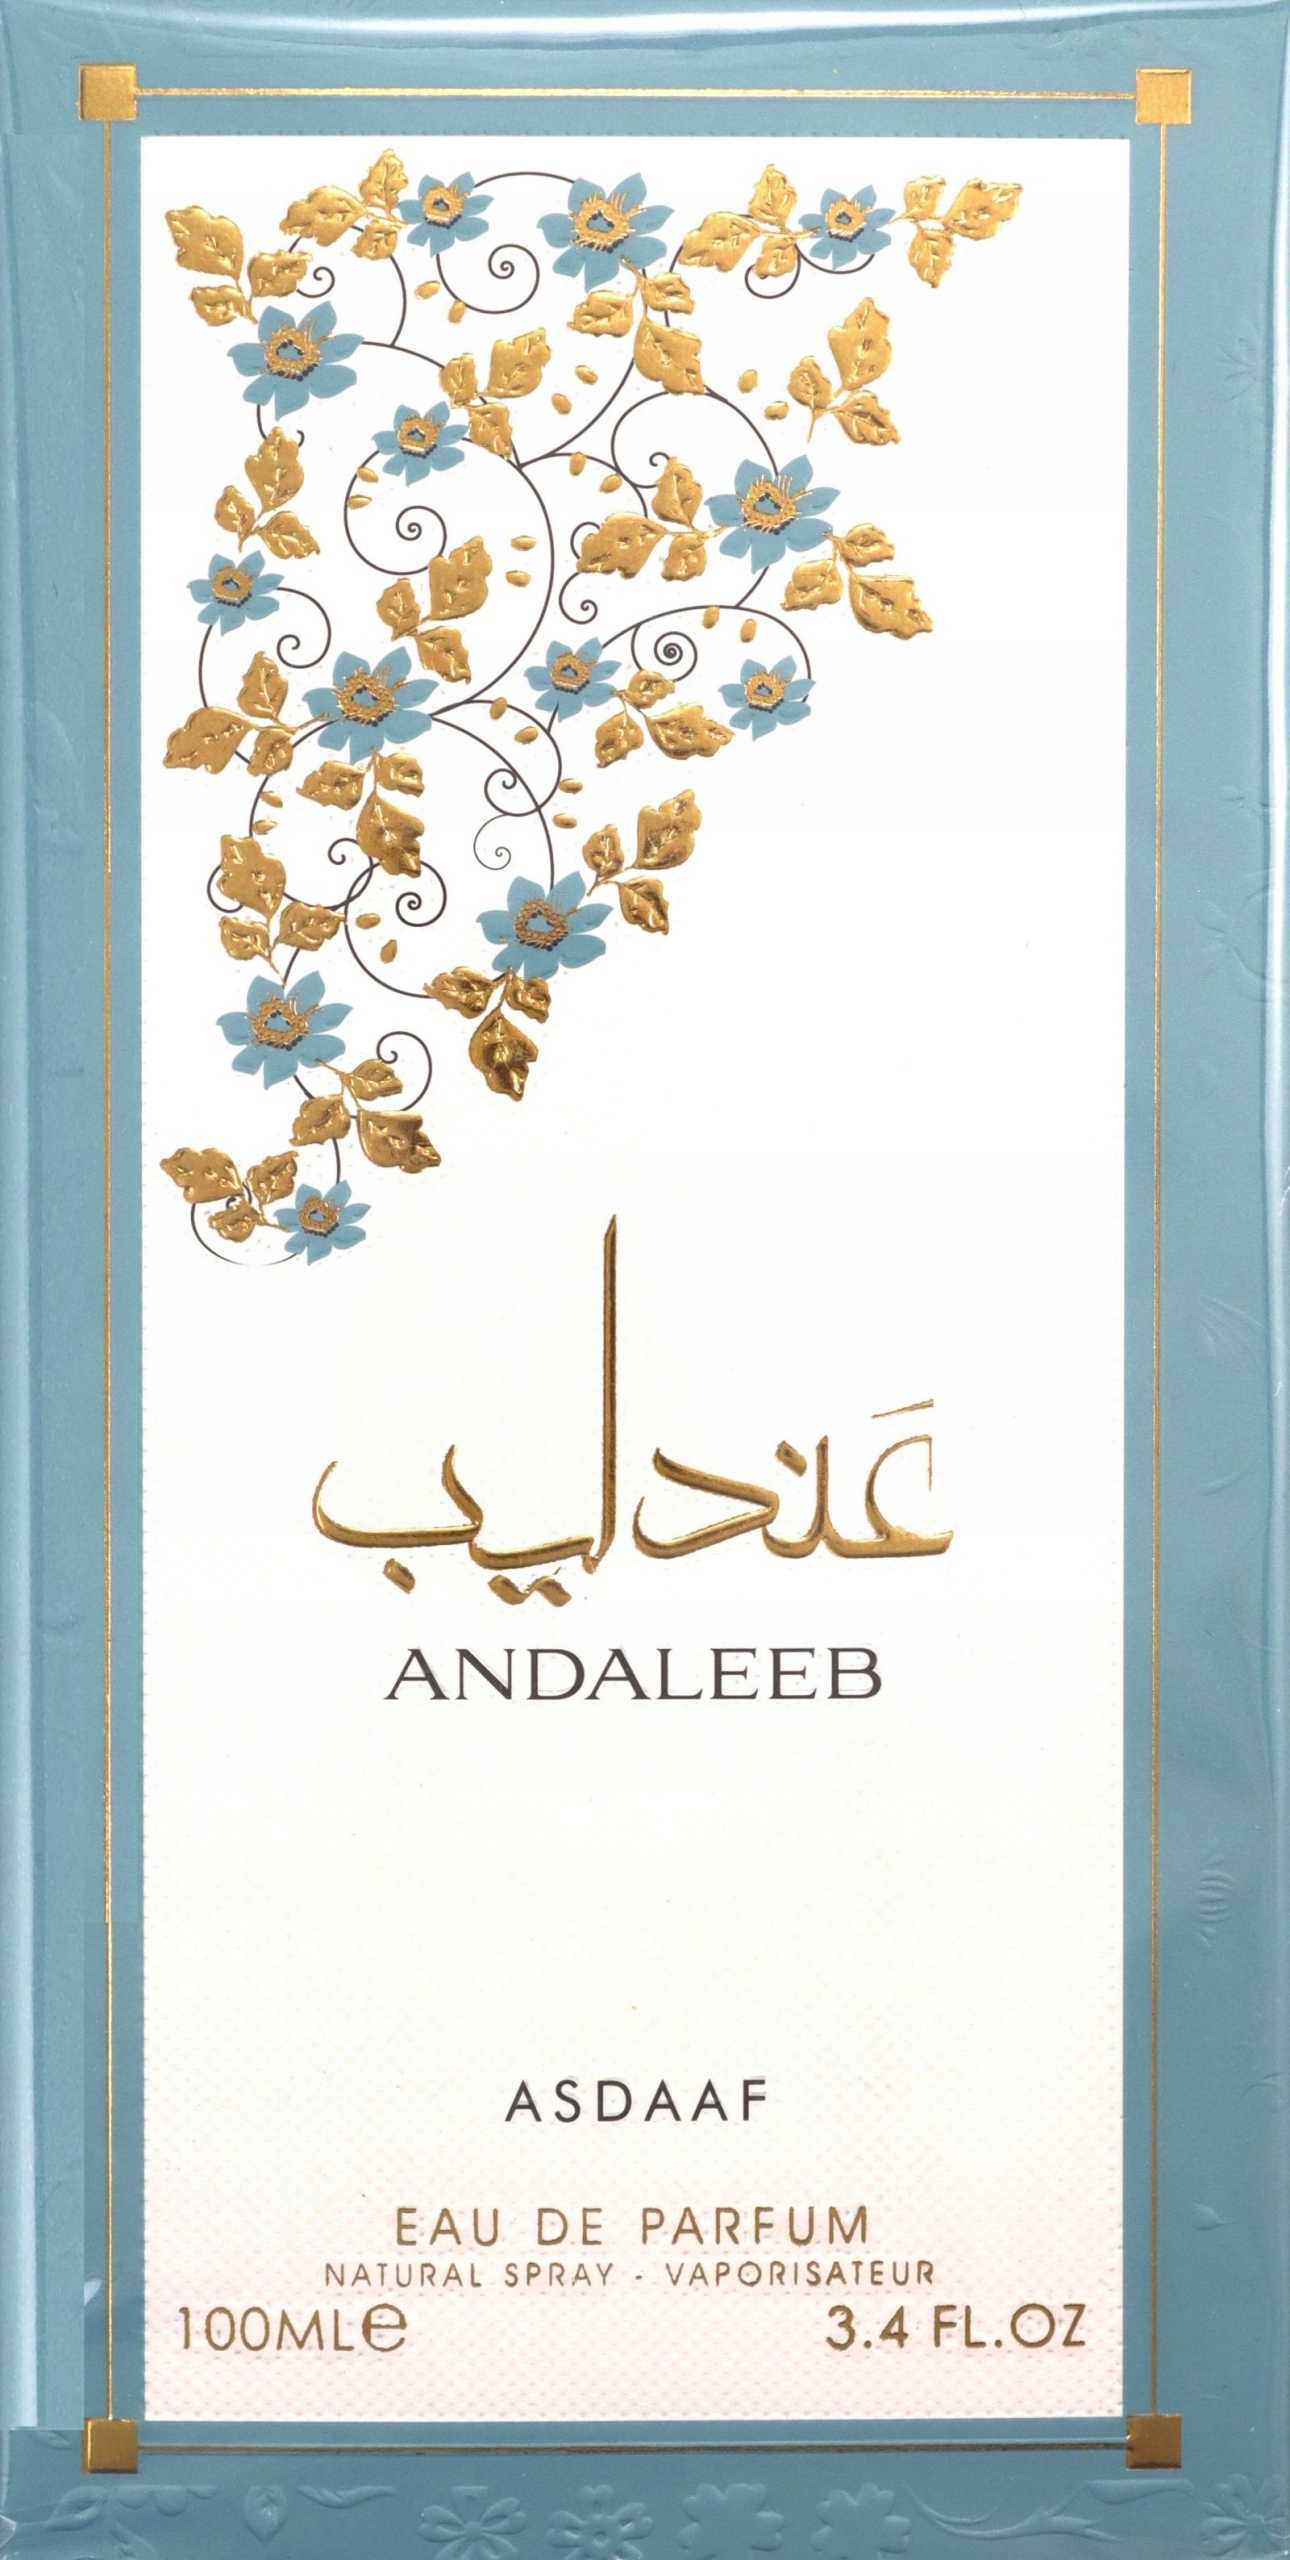 ASDAAF ANDALEEB - WODA PERFUMOWANA - VOLUME: 100 ML